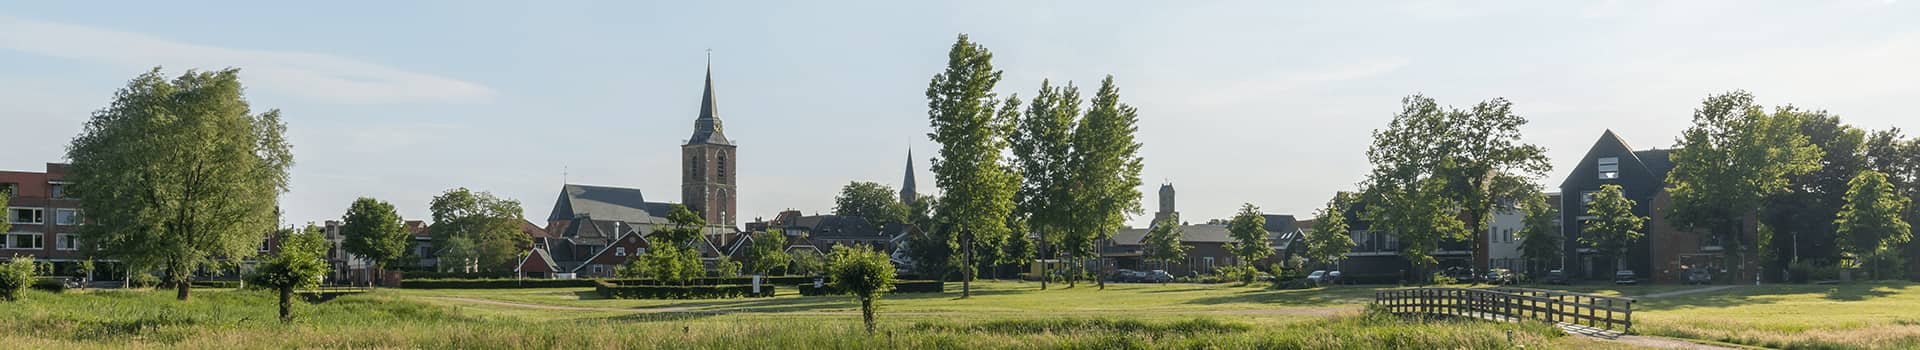 Ferienparks Gelderland